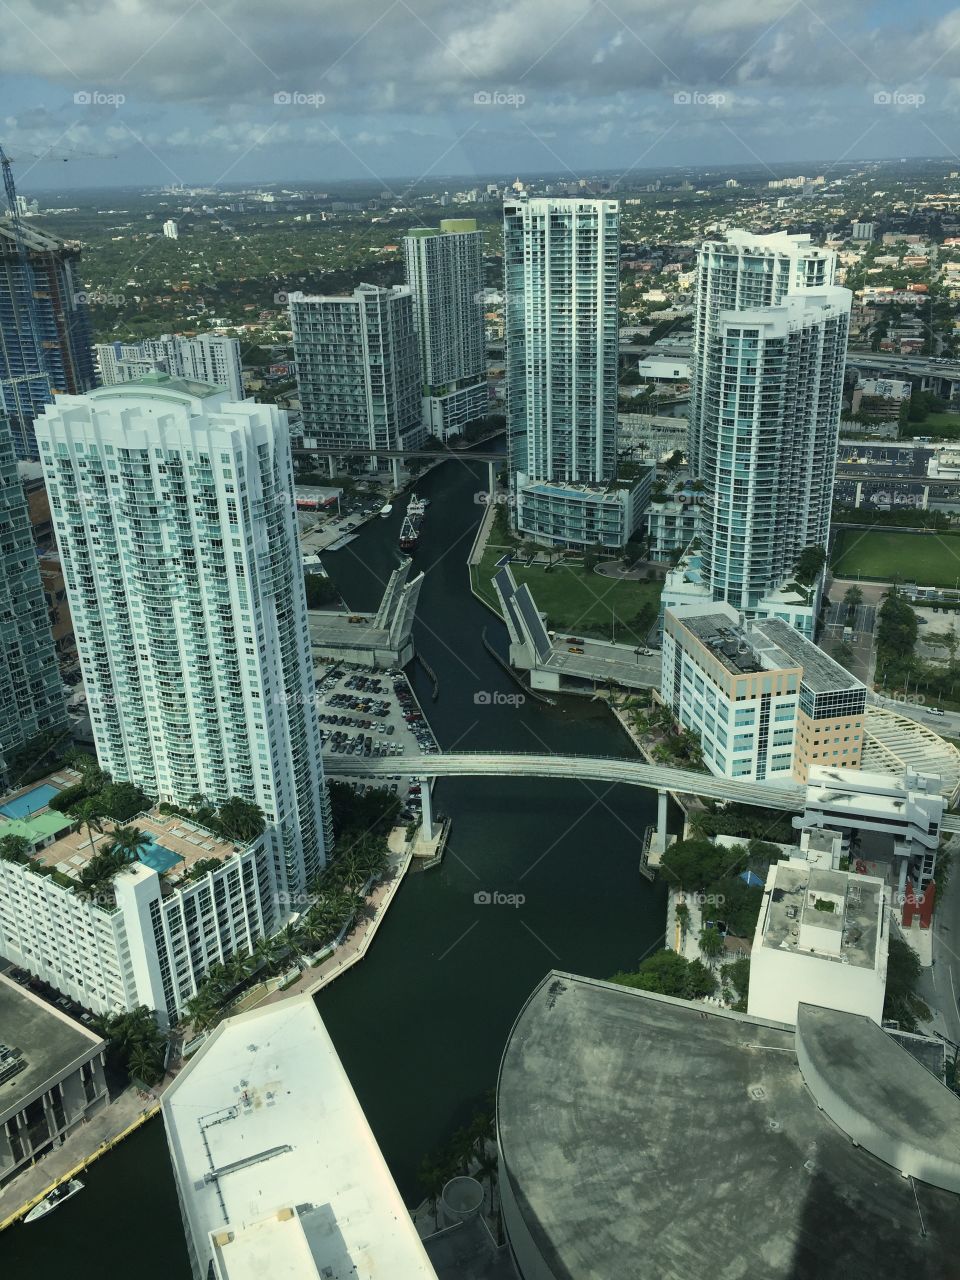 Miami. Buildings by Miami River, Miami, Florida, USA 